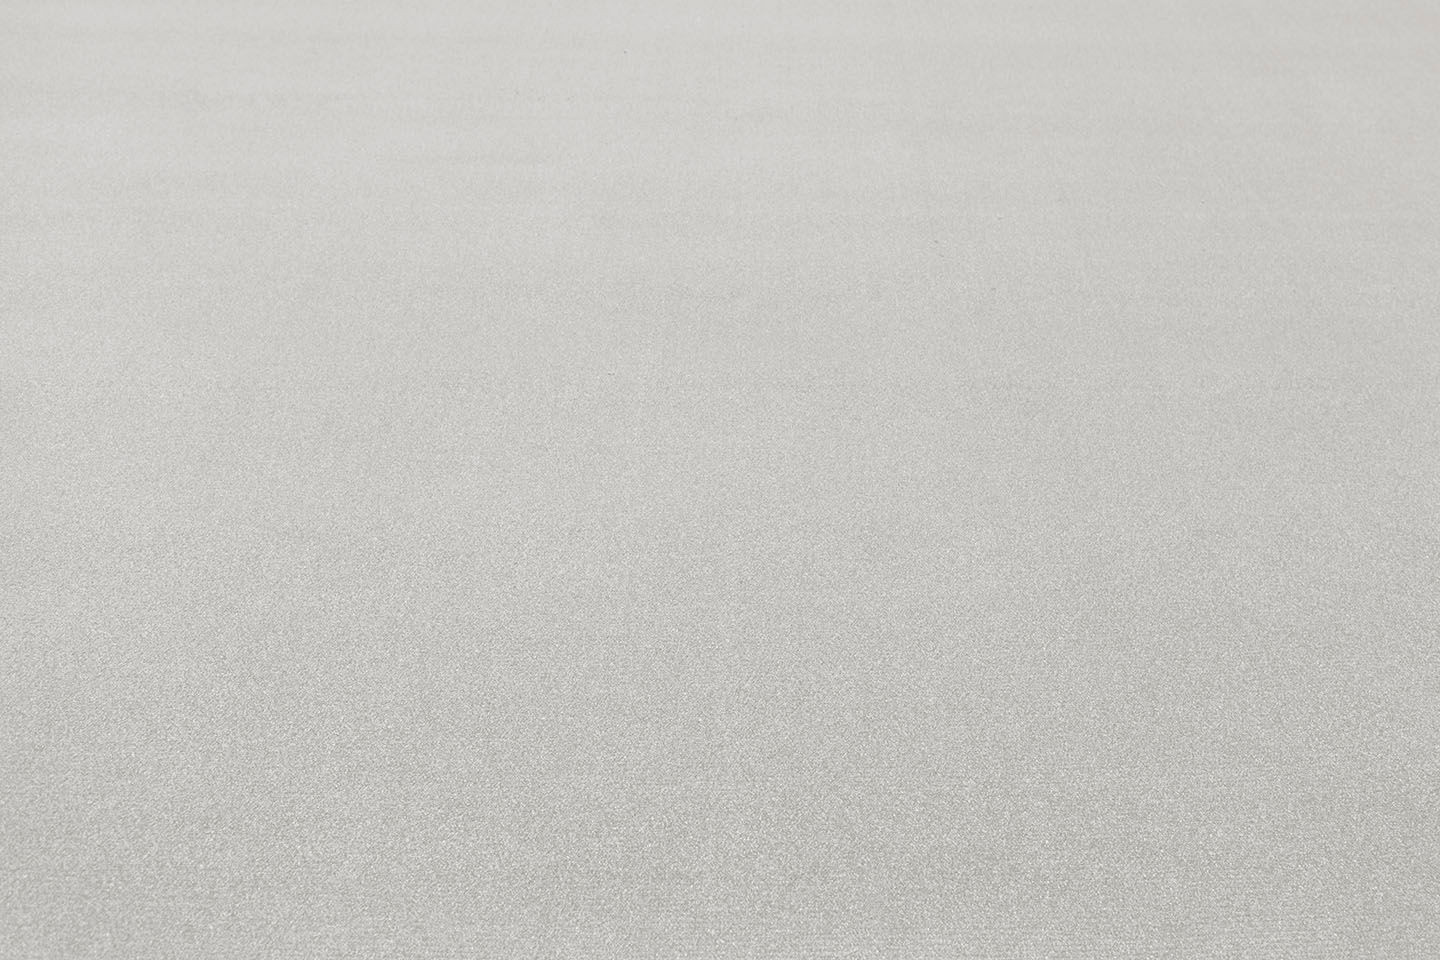 Metrážny koberec SWEET sivý